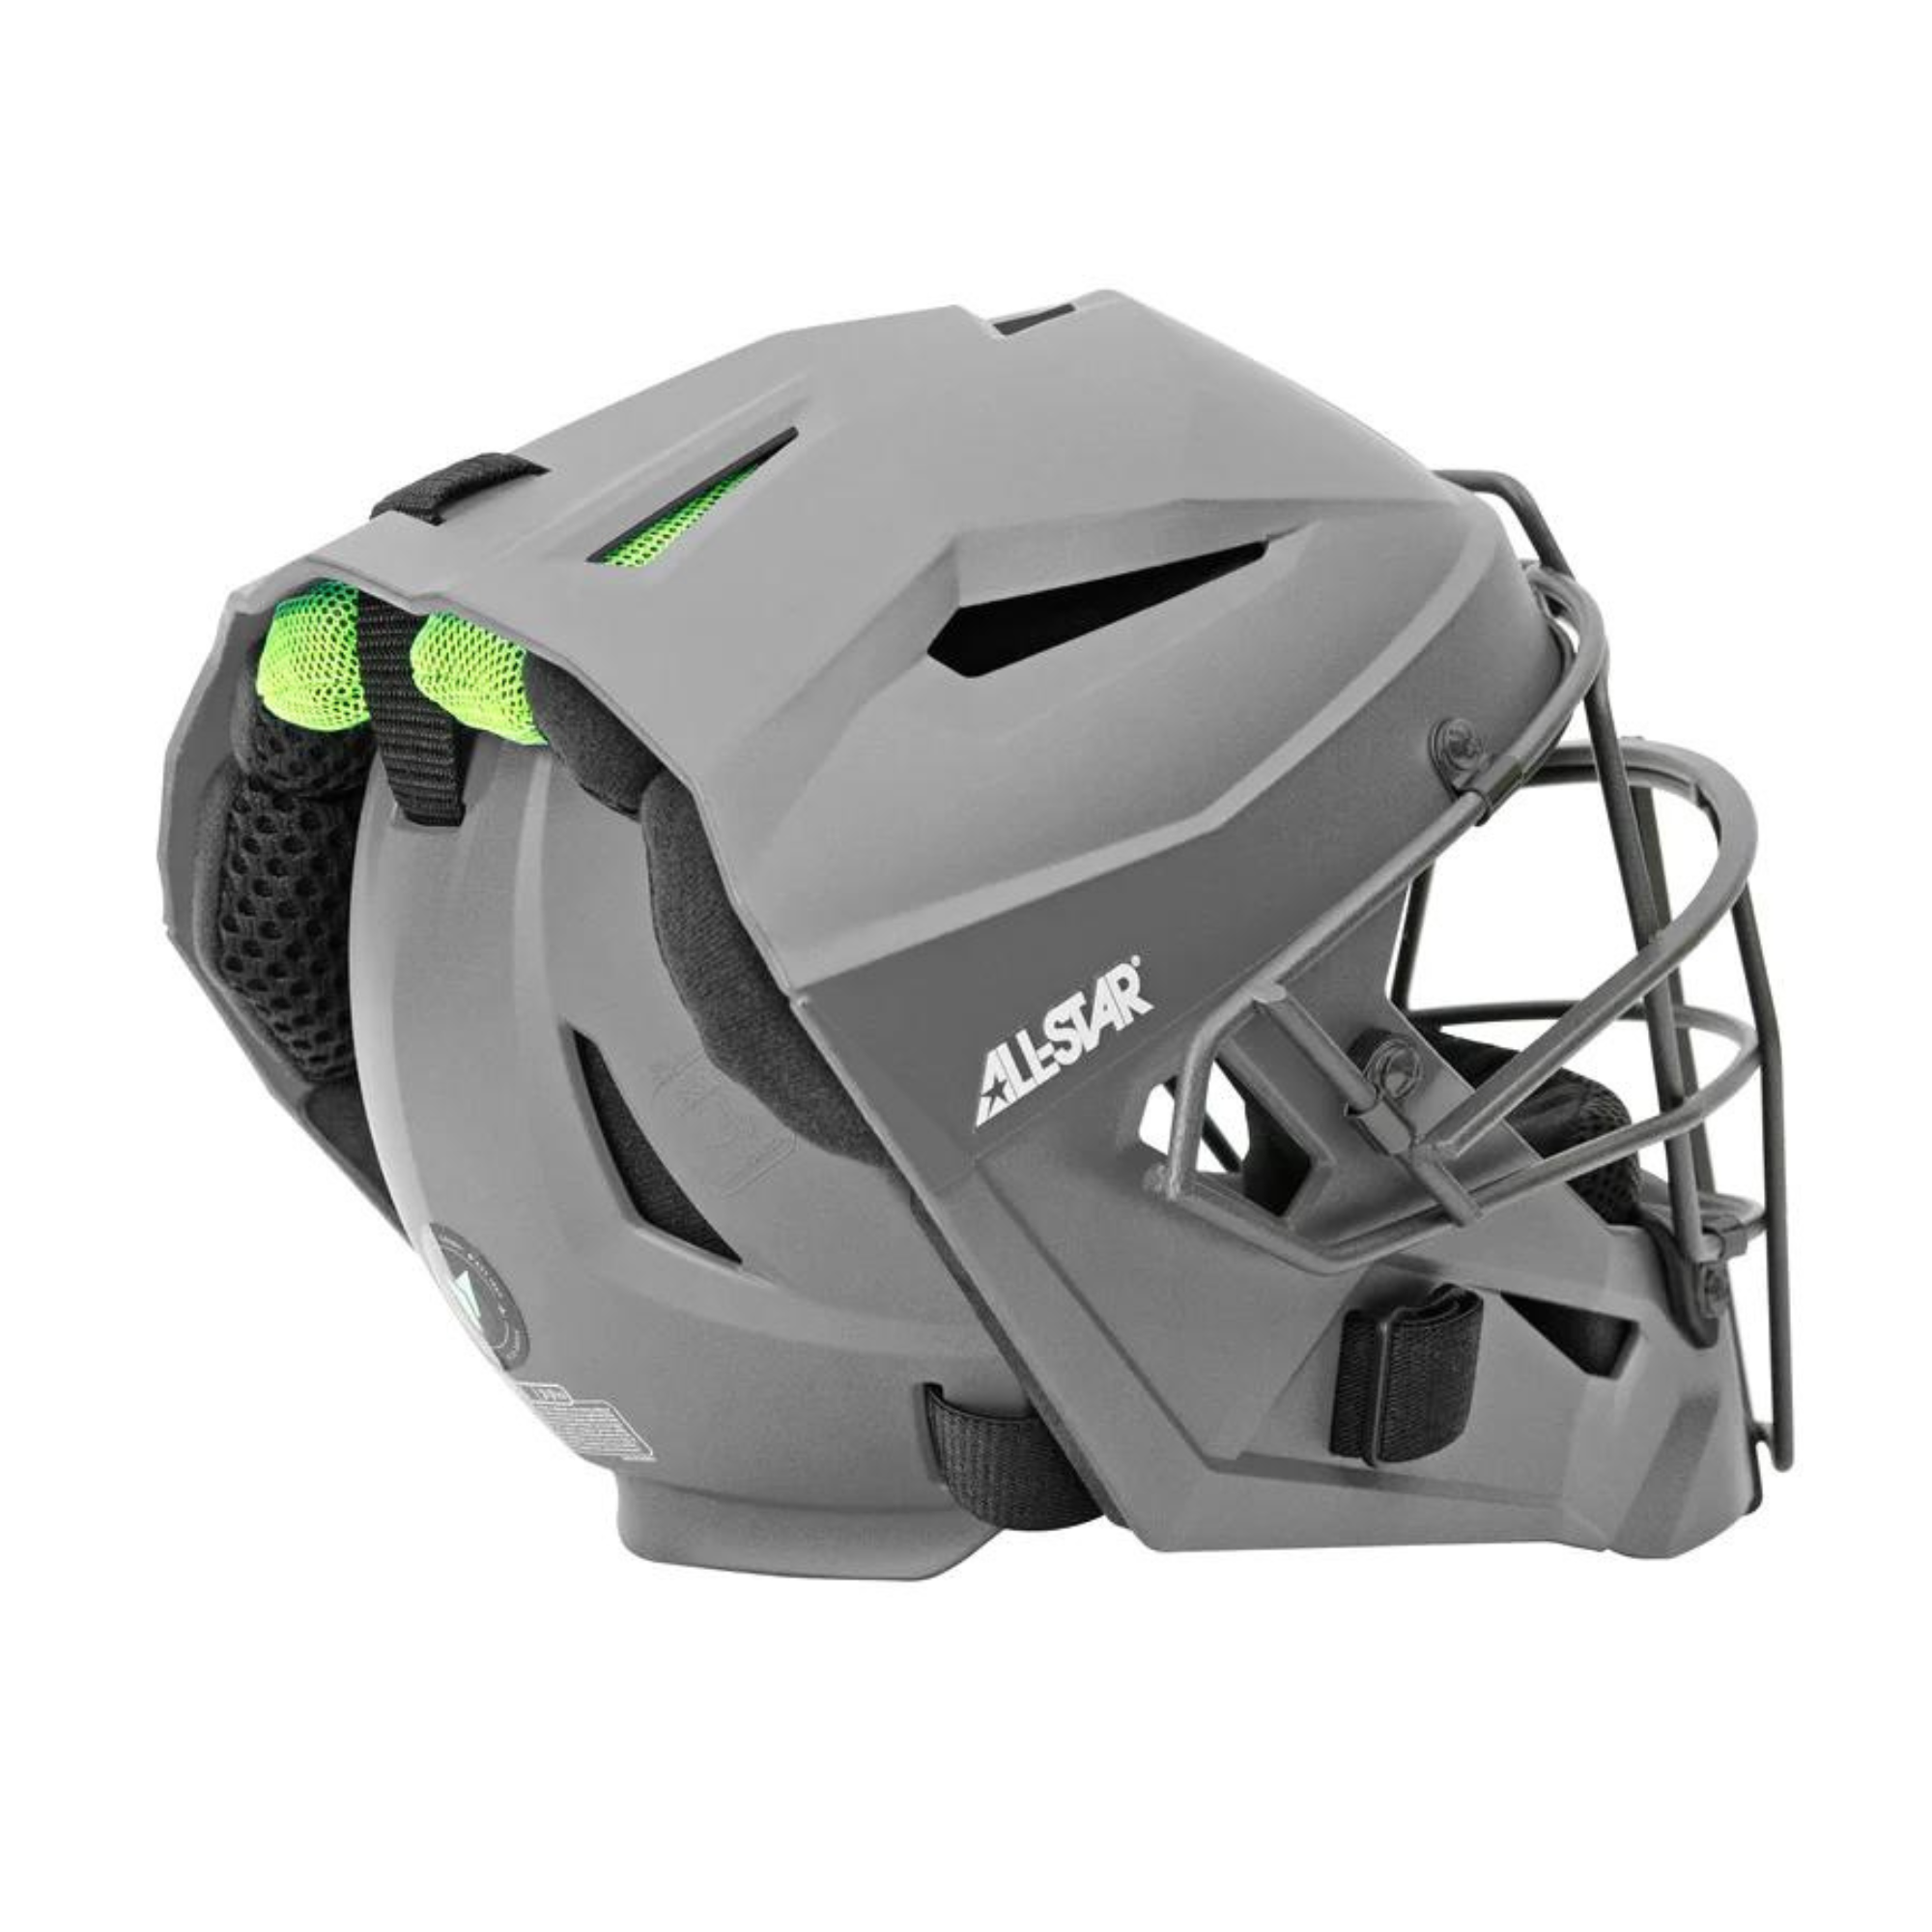 All-Star Adult MVP PRO Catcher's Helmet w/ Deflexion Tech - Matte